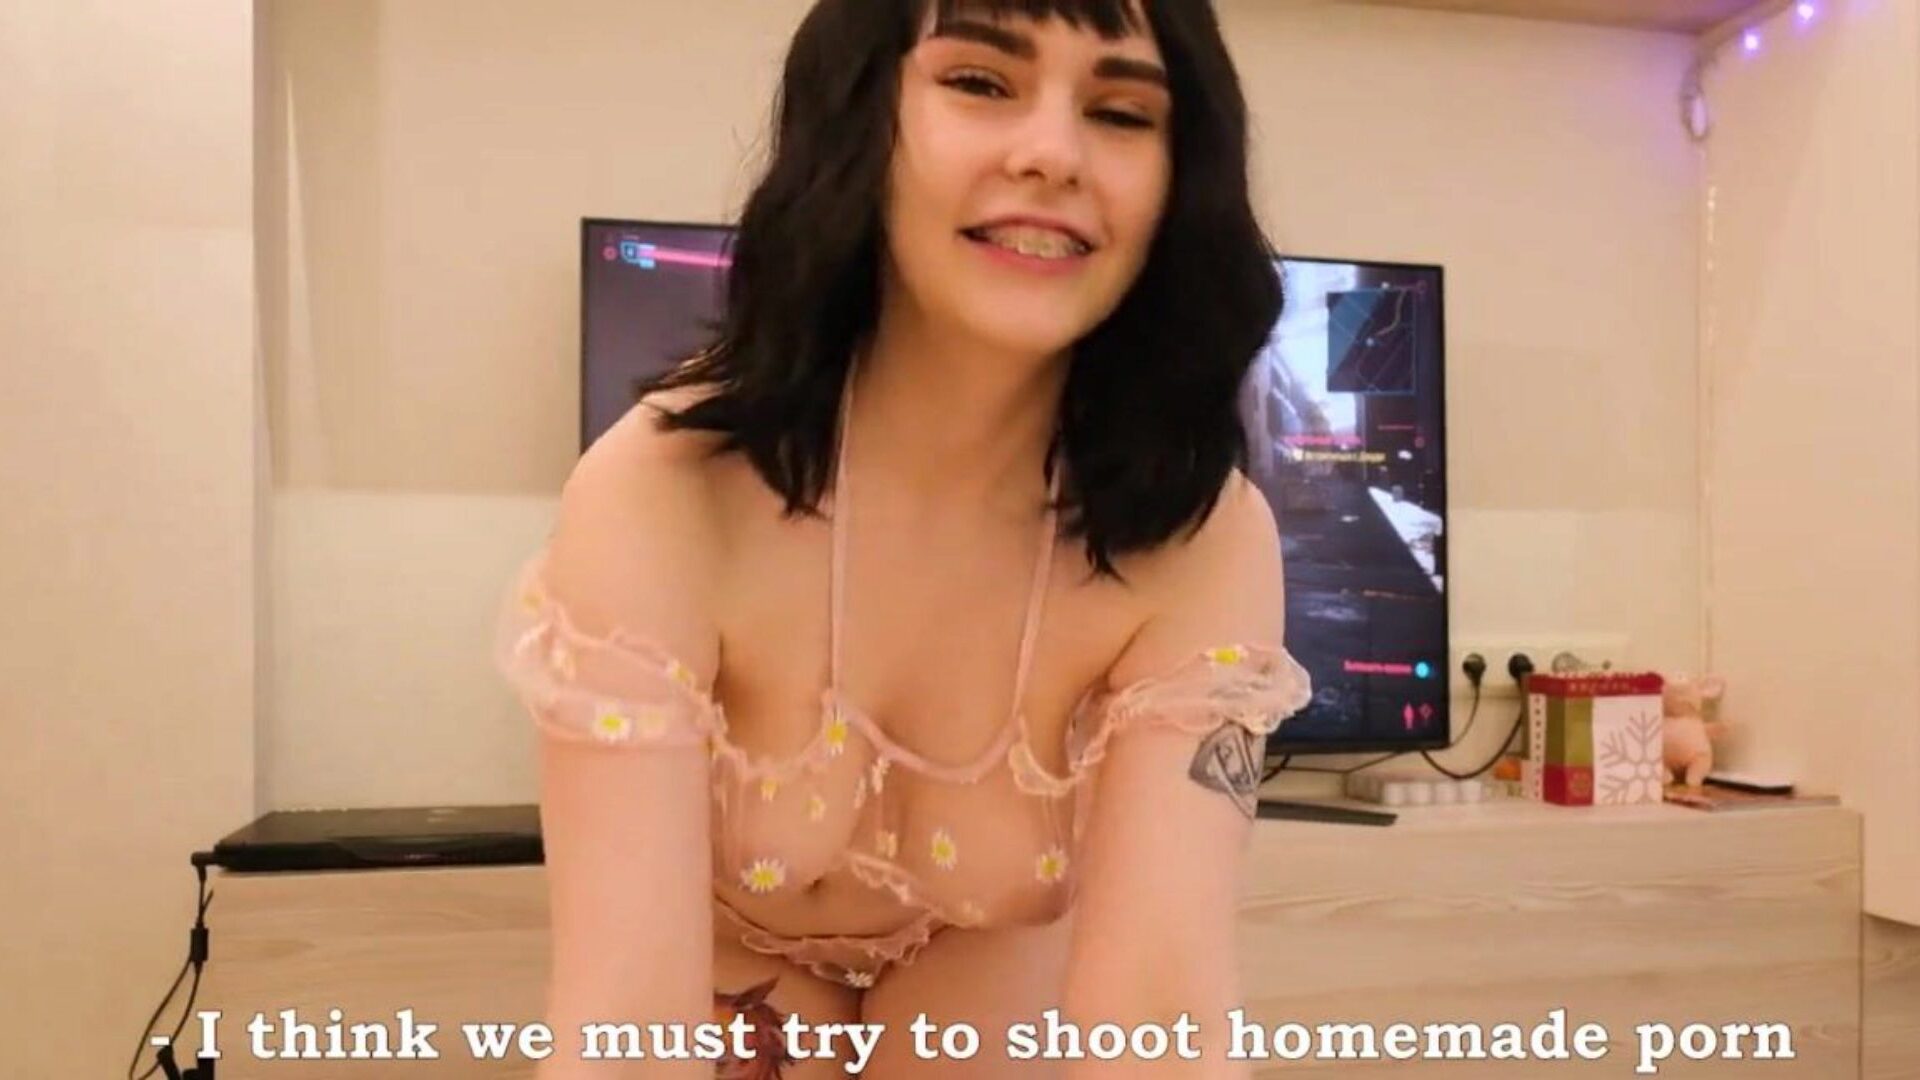 dögös barátnőm akarja lőni a szexünket: ingyenes hd pornó c9 nézni a dögös barátnőm akarja lőni a szex klipünket a xhamsteren